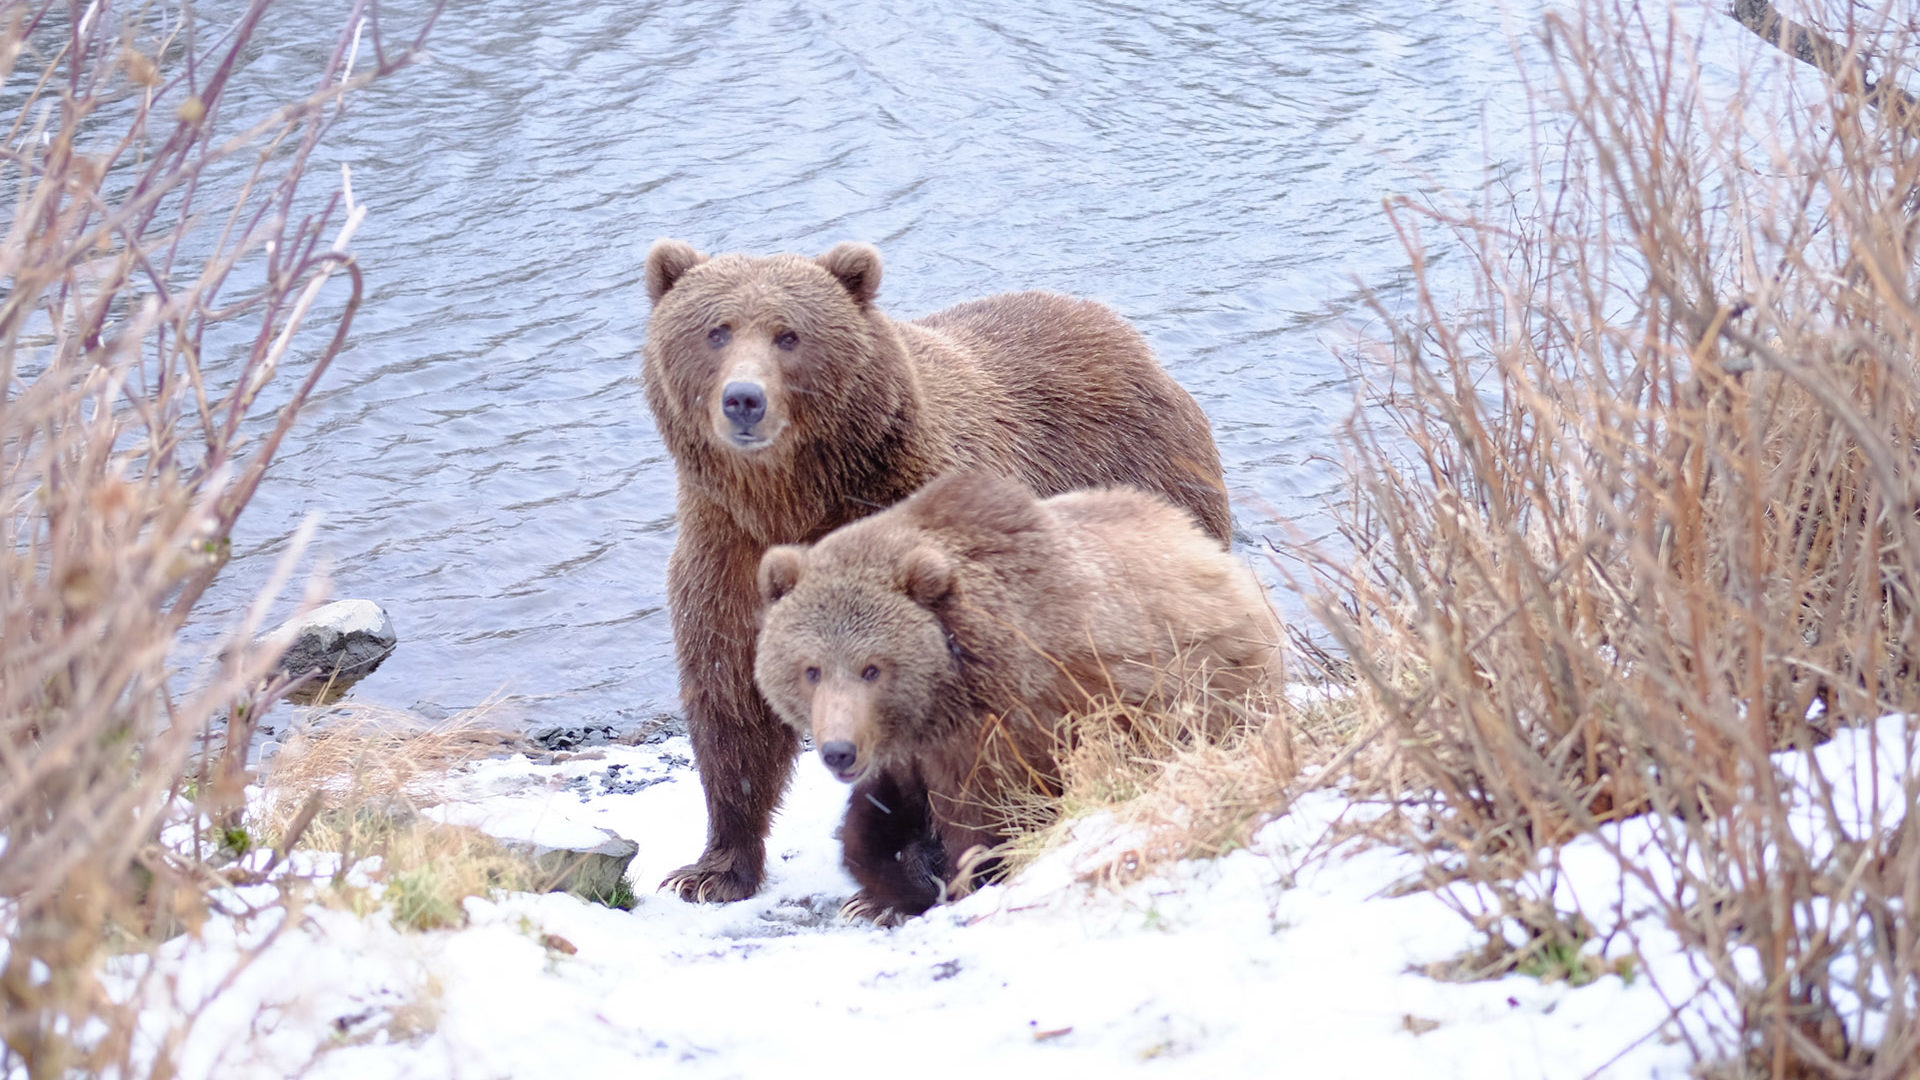 L'image montre deux ours bruns marchant sur un sentier enneigé, près d'une rivière. L'ours à l'arrière est plus grand et semble être un adulte, tandis que l'ours à l'avant est plus petit et pourrait être un ourson. Le paysage environnant est composé de végétation clairsemée, de buissons et de neige couvrant le sol. La rivière à l'arrière-plan a un courant calme. Les ours regardent dans la direction de l'objectif de la caméra, ce qui donne l'impression qu'ils sont conscients de la présence du photographe.